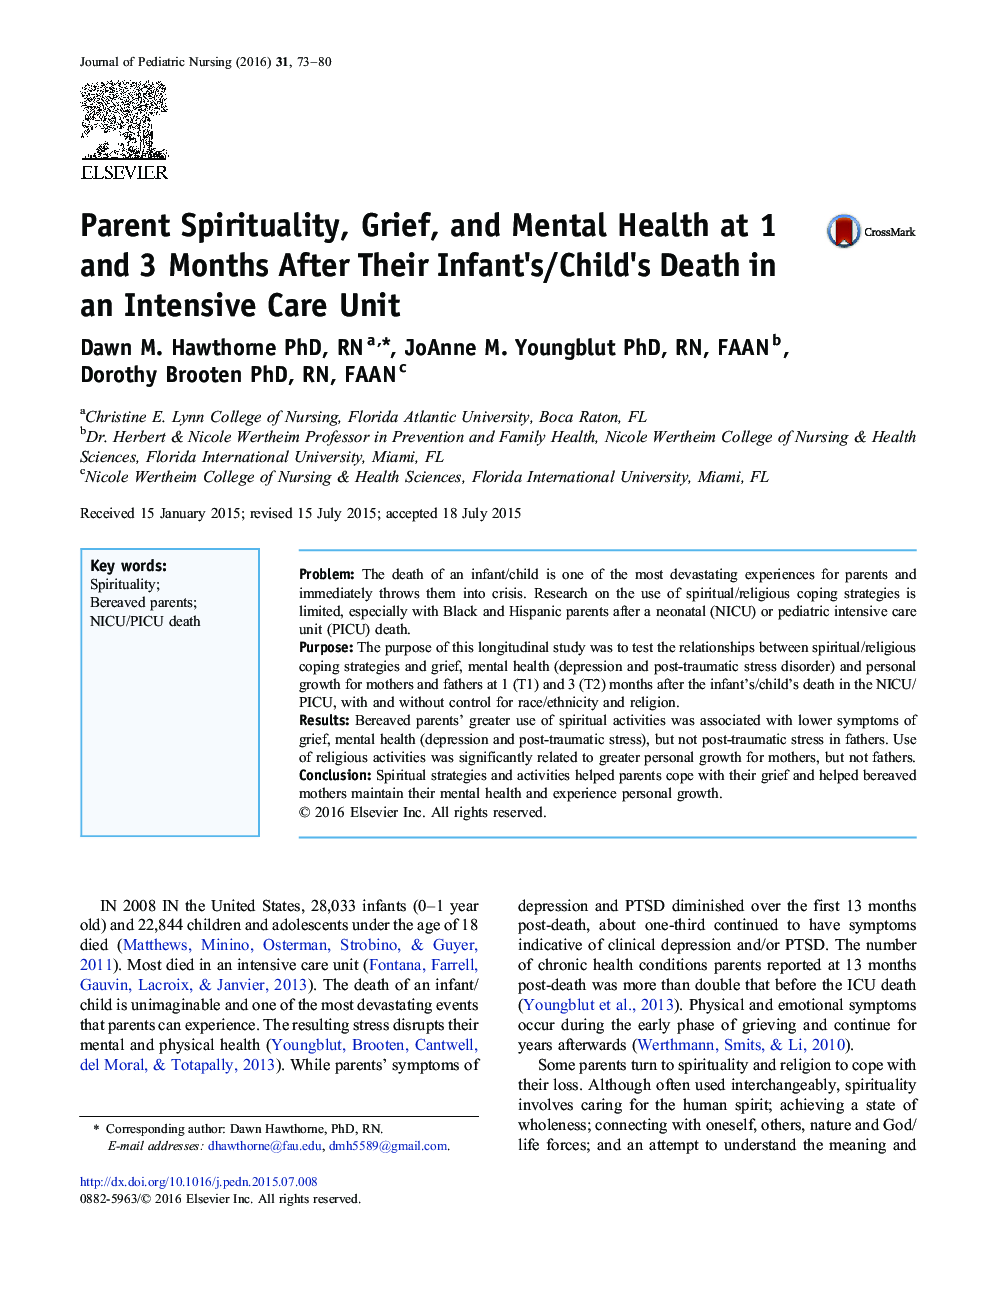 معنویت والدین، غم و اندوه و سلامت روان در 1 و 3 ماه پس از مرگ نوزاد/فرزند خود در واحد مراقبت های ویژه